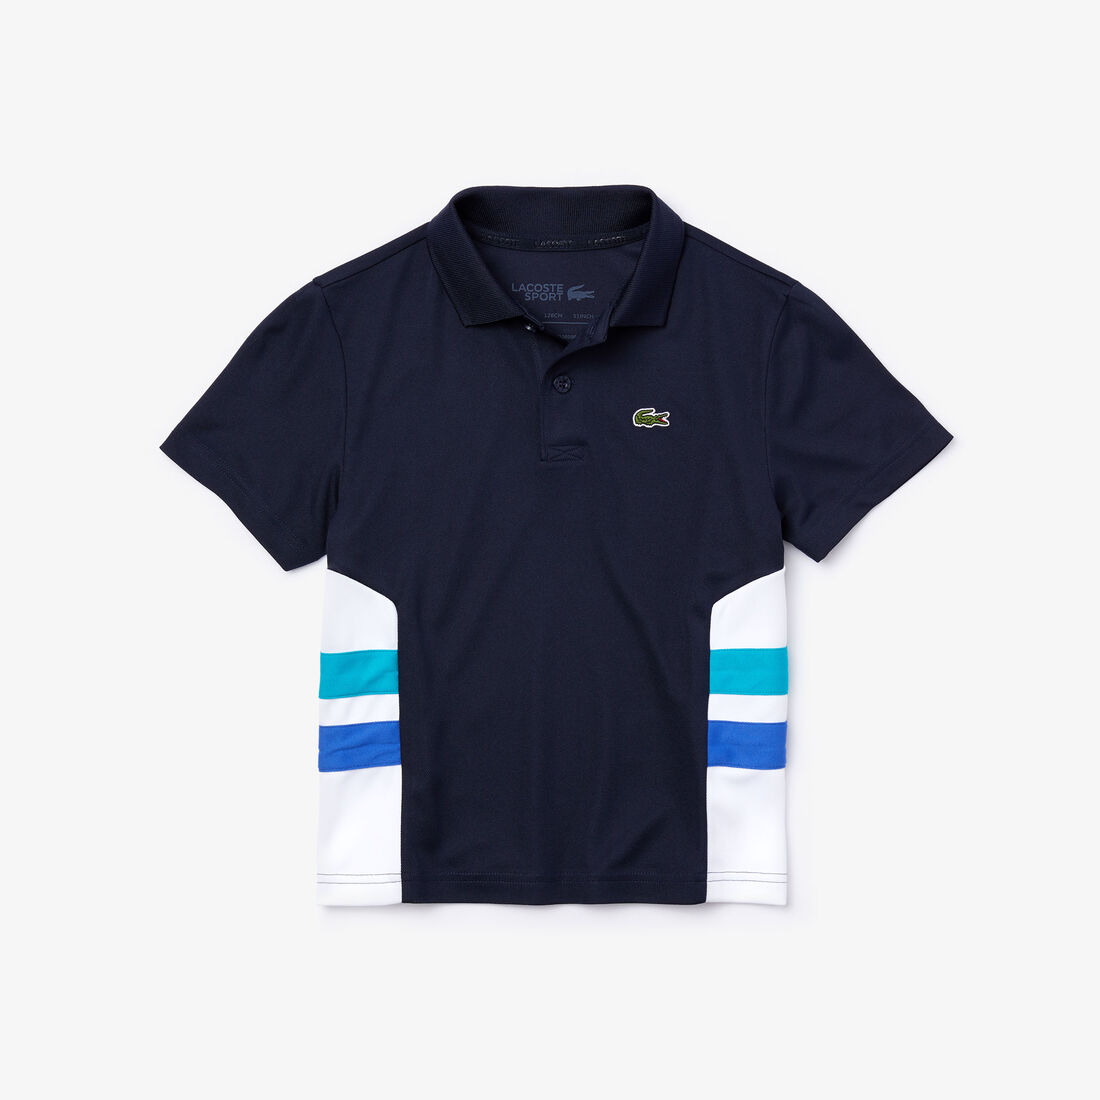 قميص بولو للصبية للعب رياضة التنس، بألوان متعددة، من قماش يسمح بمرور الهواء إلى الجسم، من مجموعةLacoste SPORT